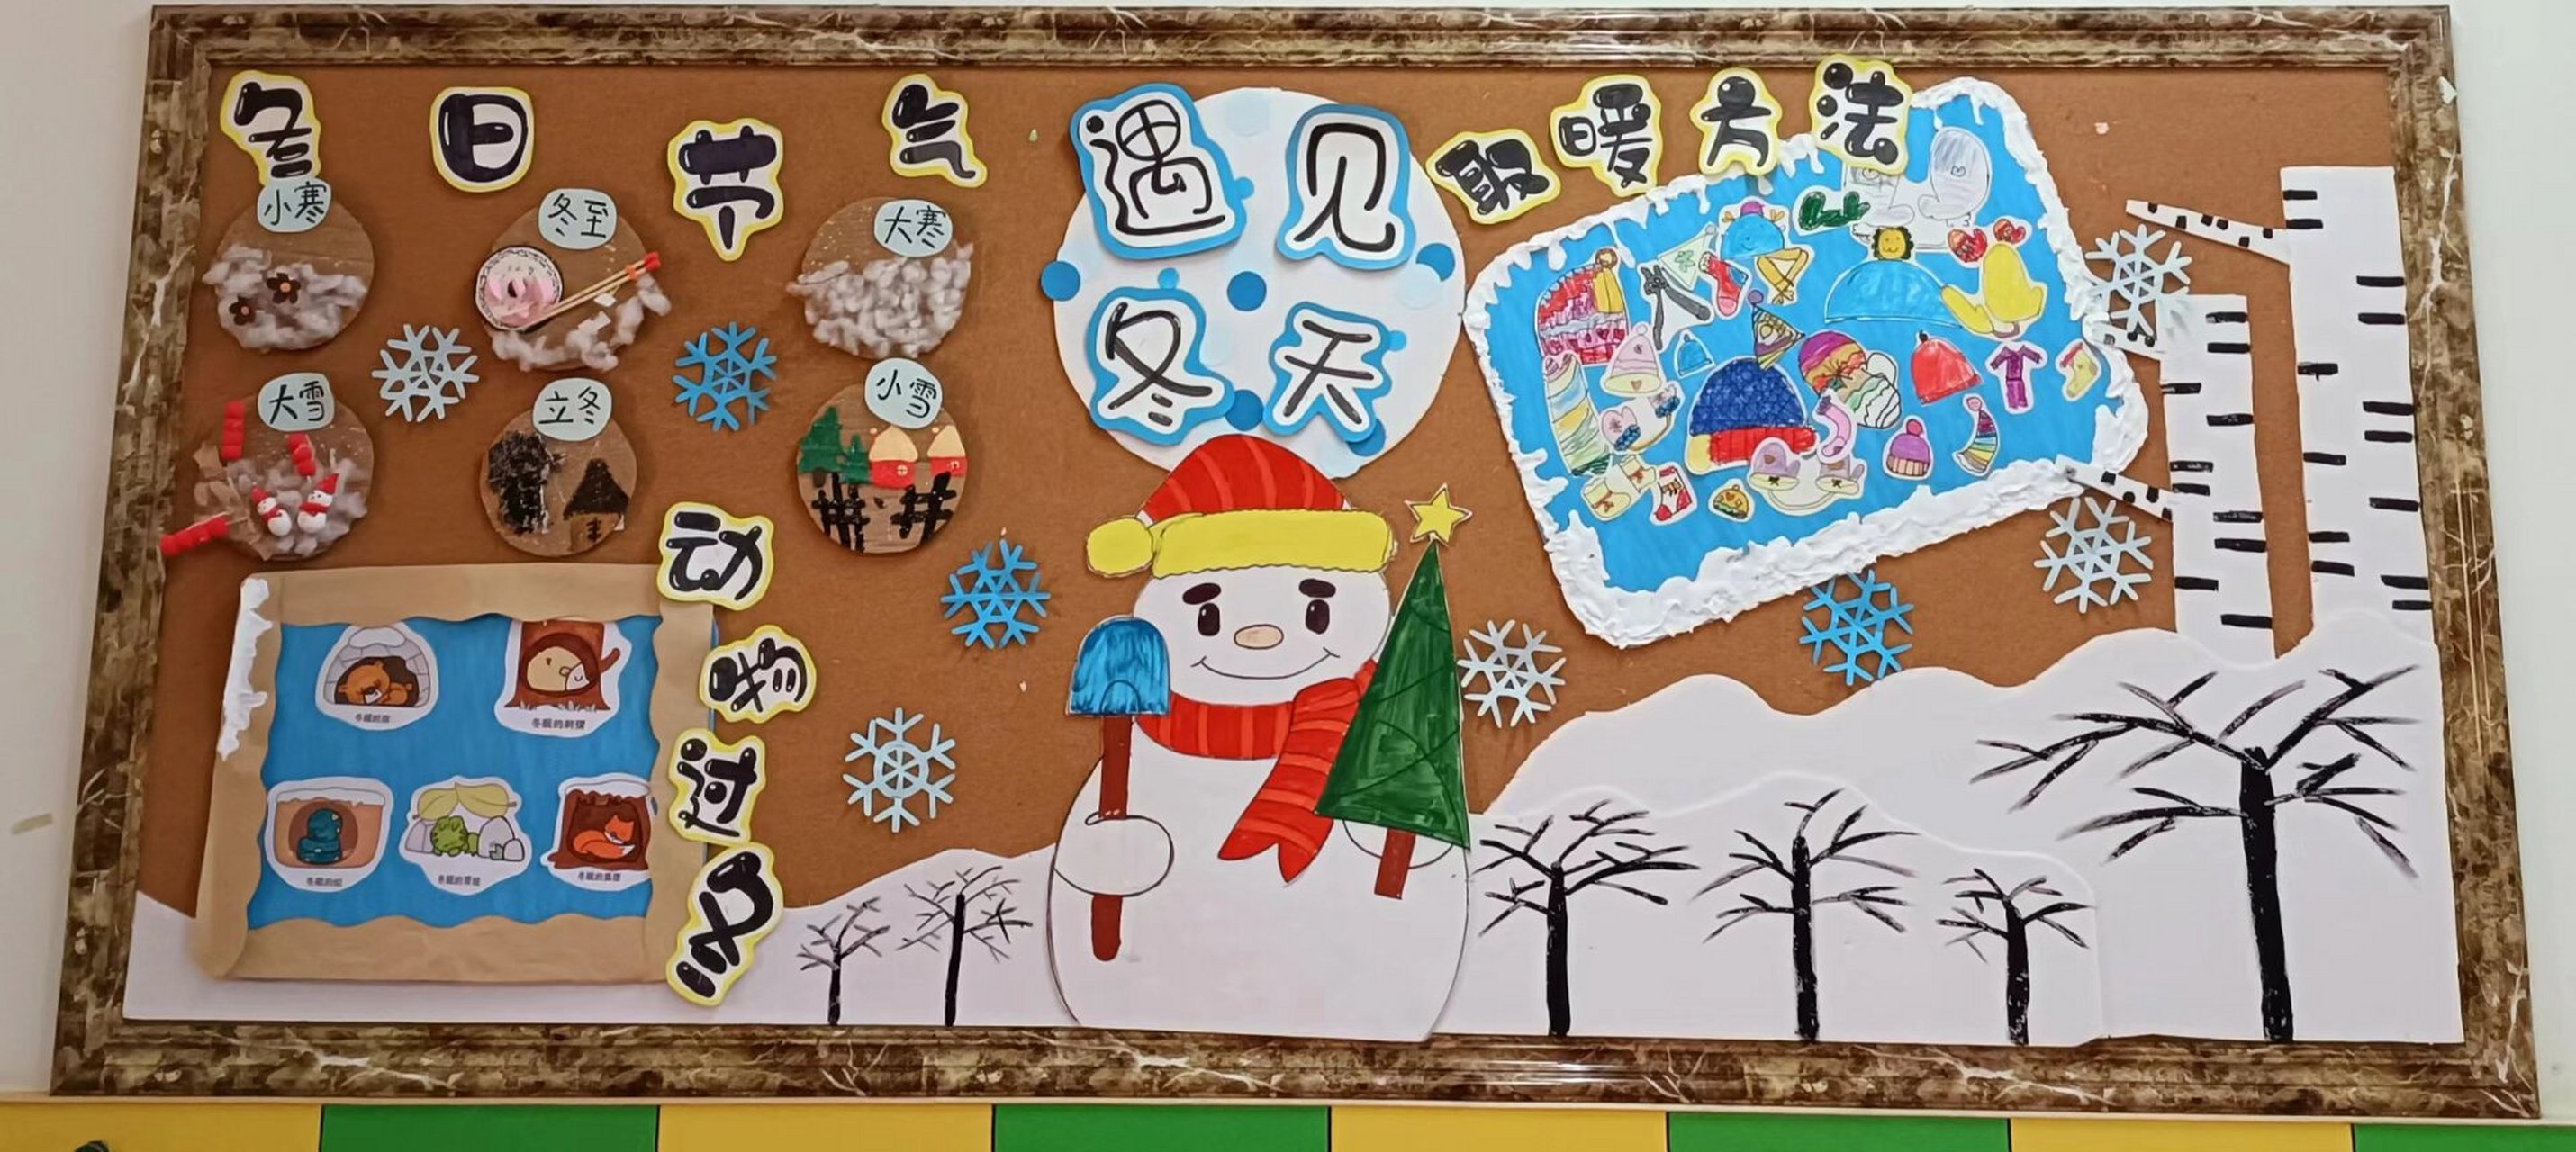 幼儿园环创冬天为主题图片